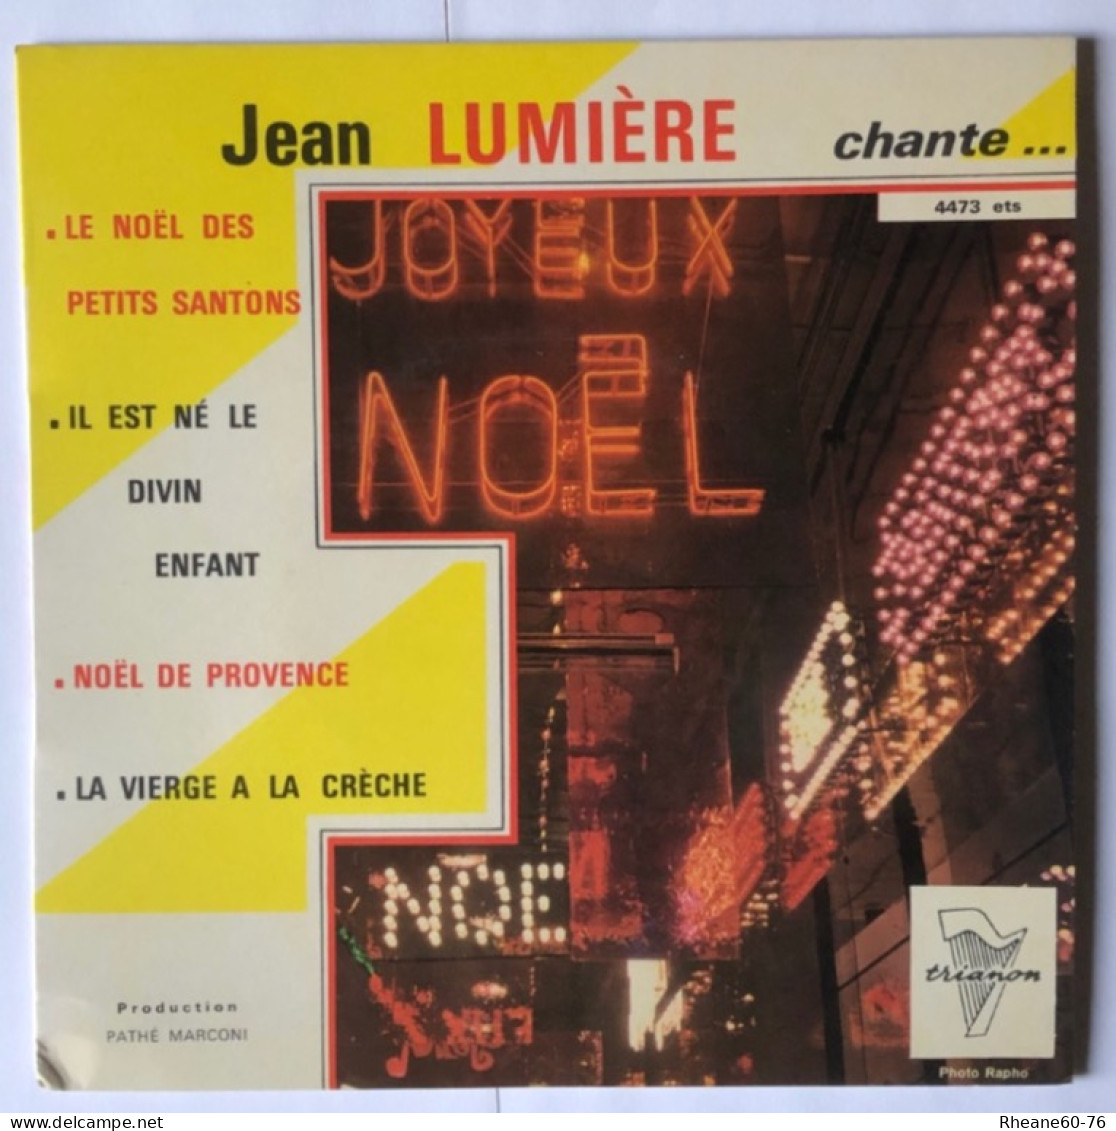 Trianon 4473 ETS - Jean Lumière Chante Noël … - Orchestre Direction Marcel Cariven - Pathé Marconi - Special Formats